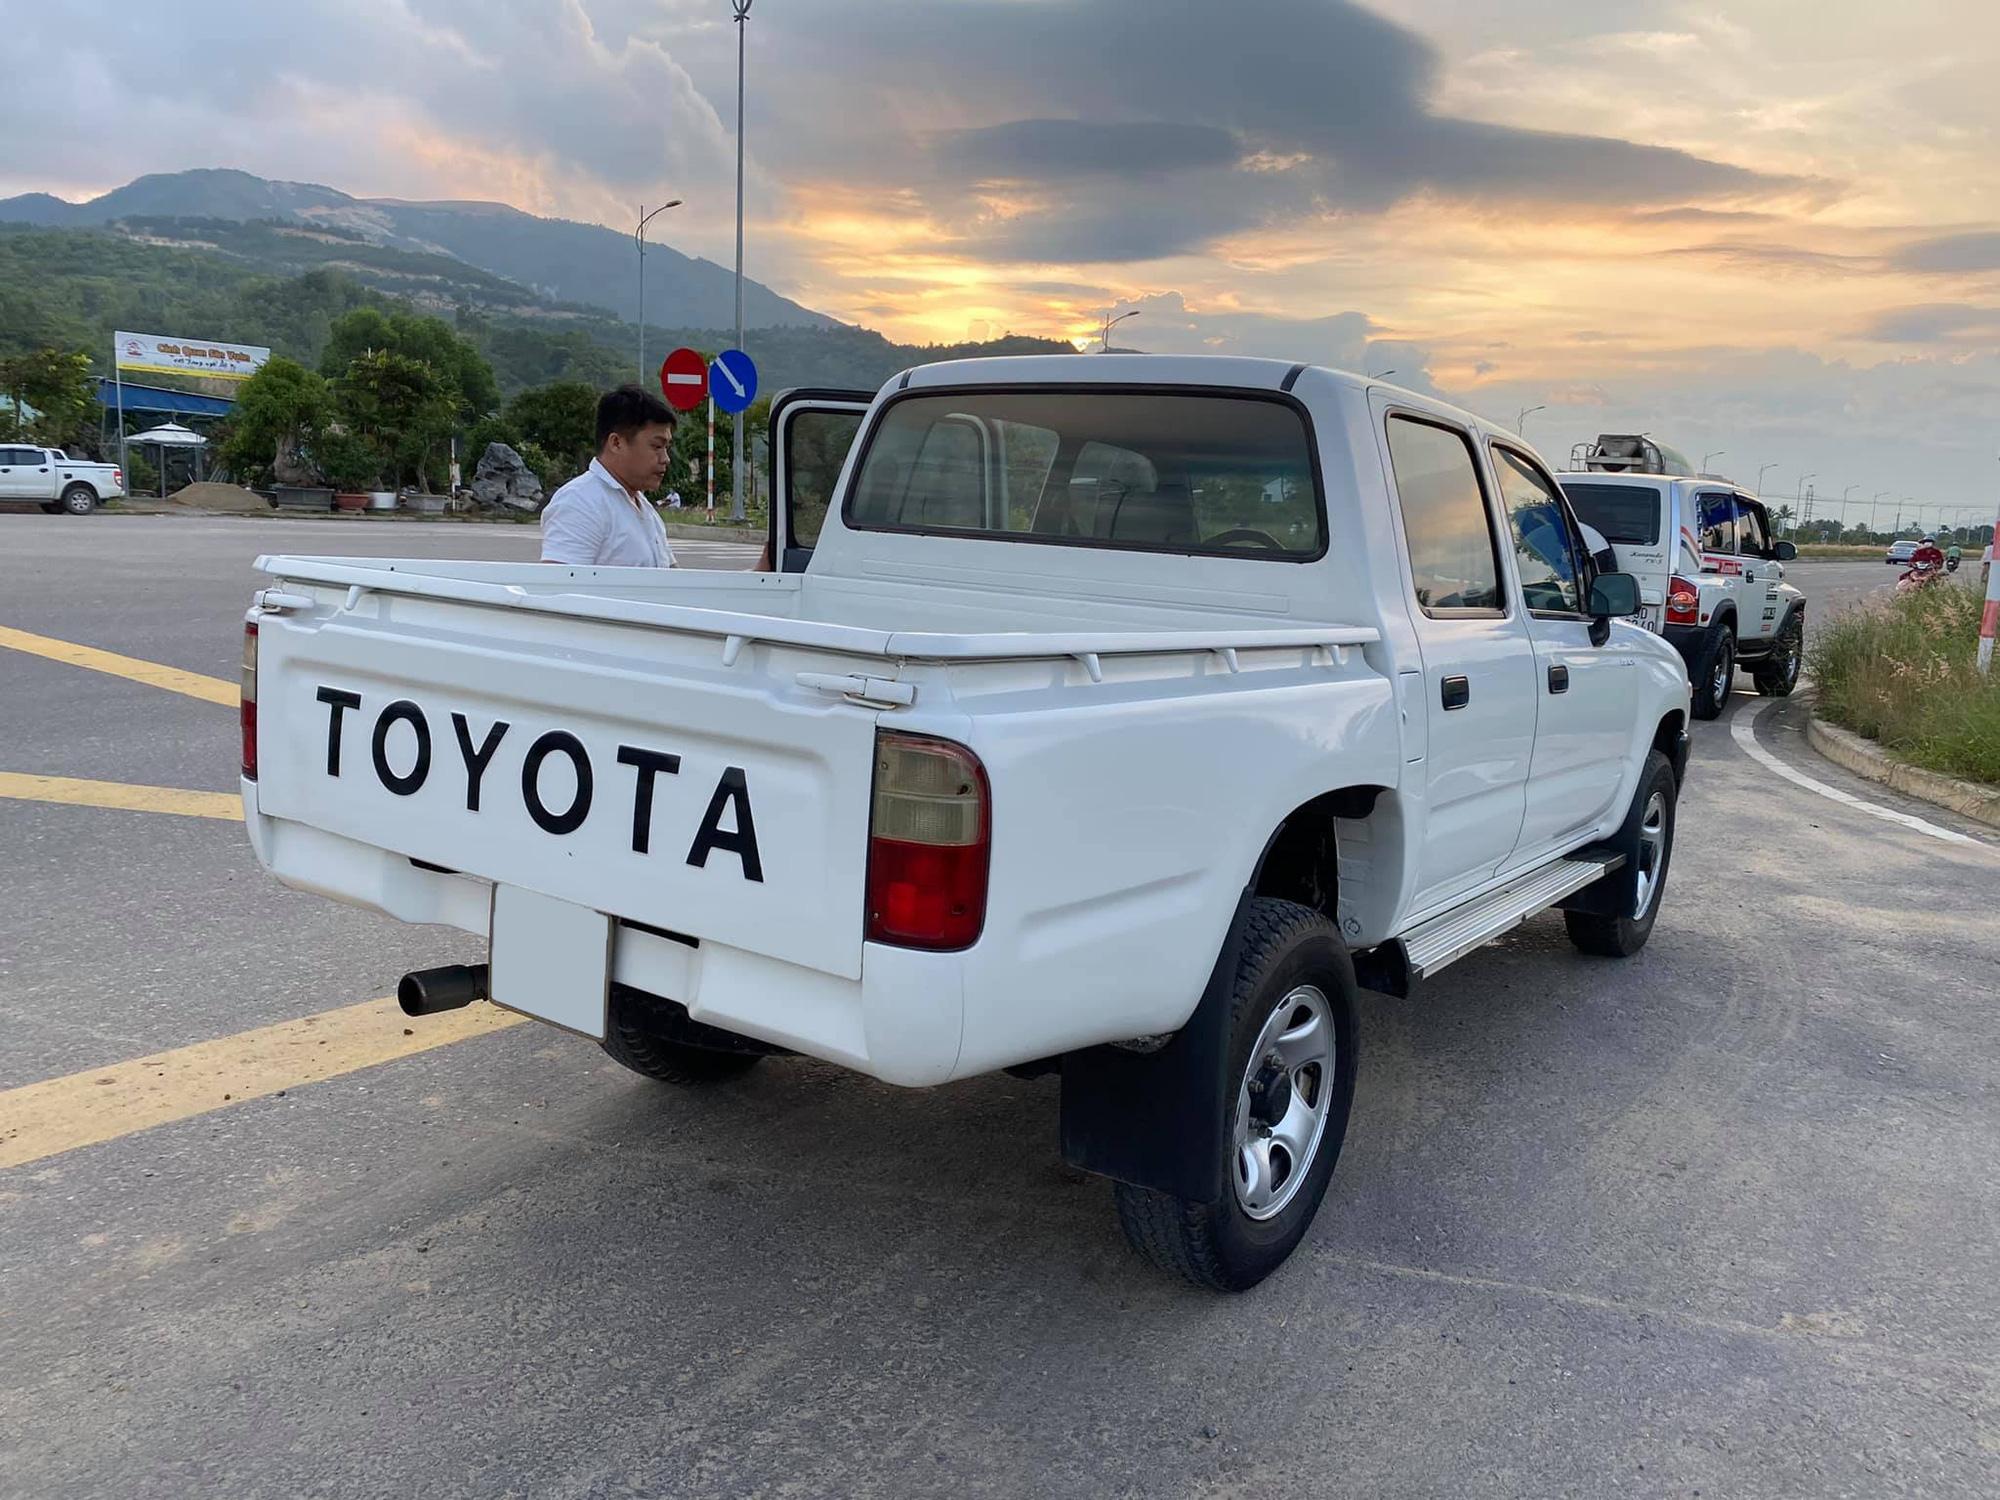 Chiếc ô tô Toyota cũ này đang rao bán nhiều nhất ở tầm giá 200 triệu đồng  tại Việt Nam  Báo Dân trí